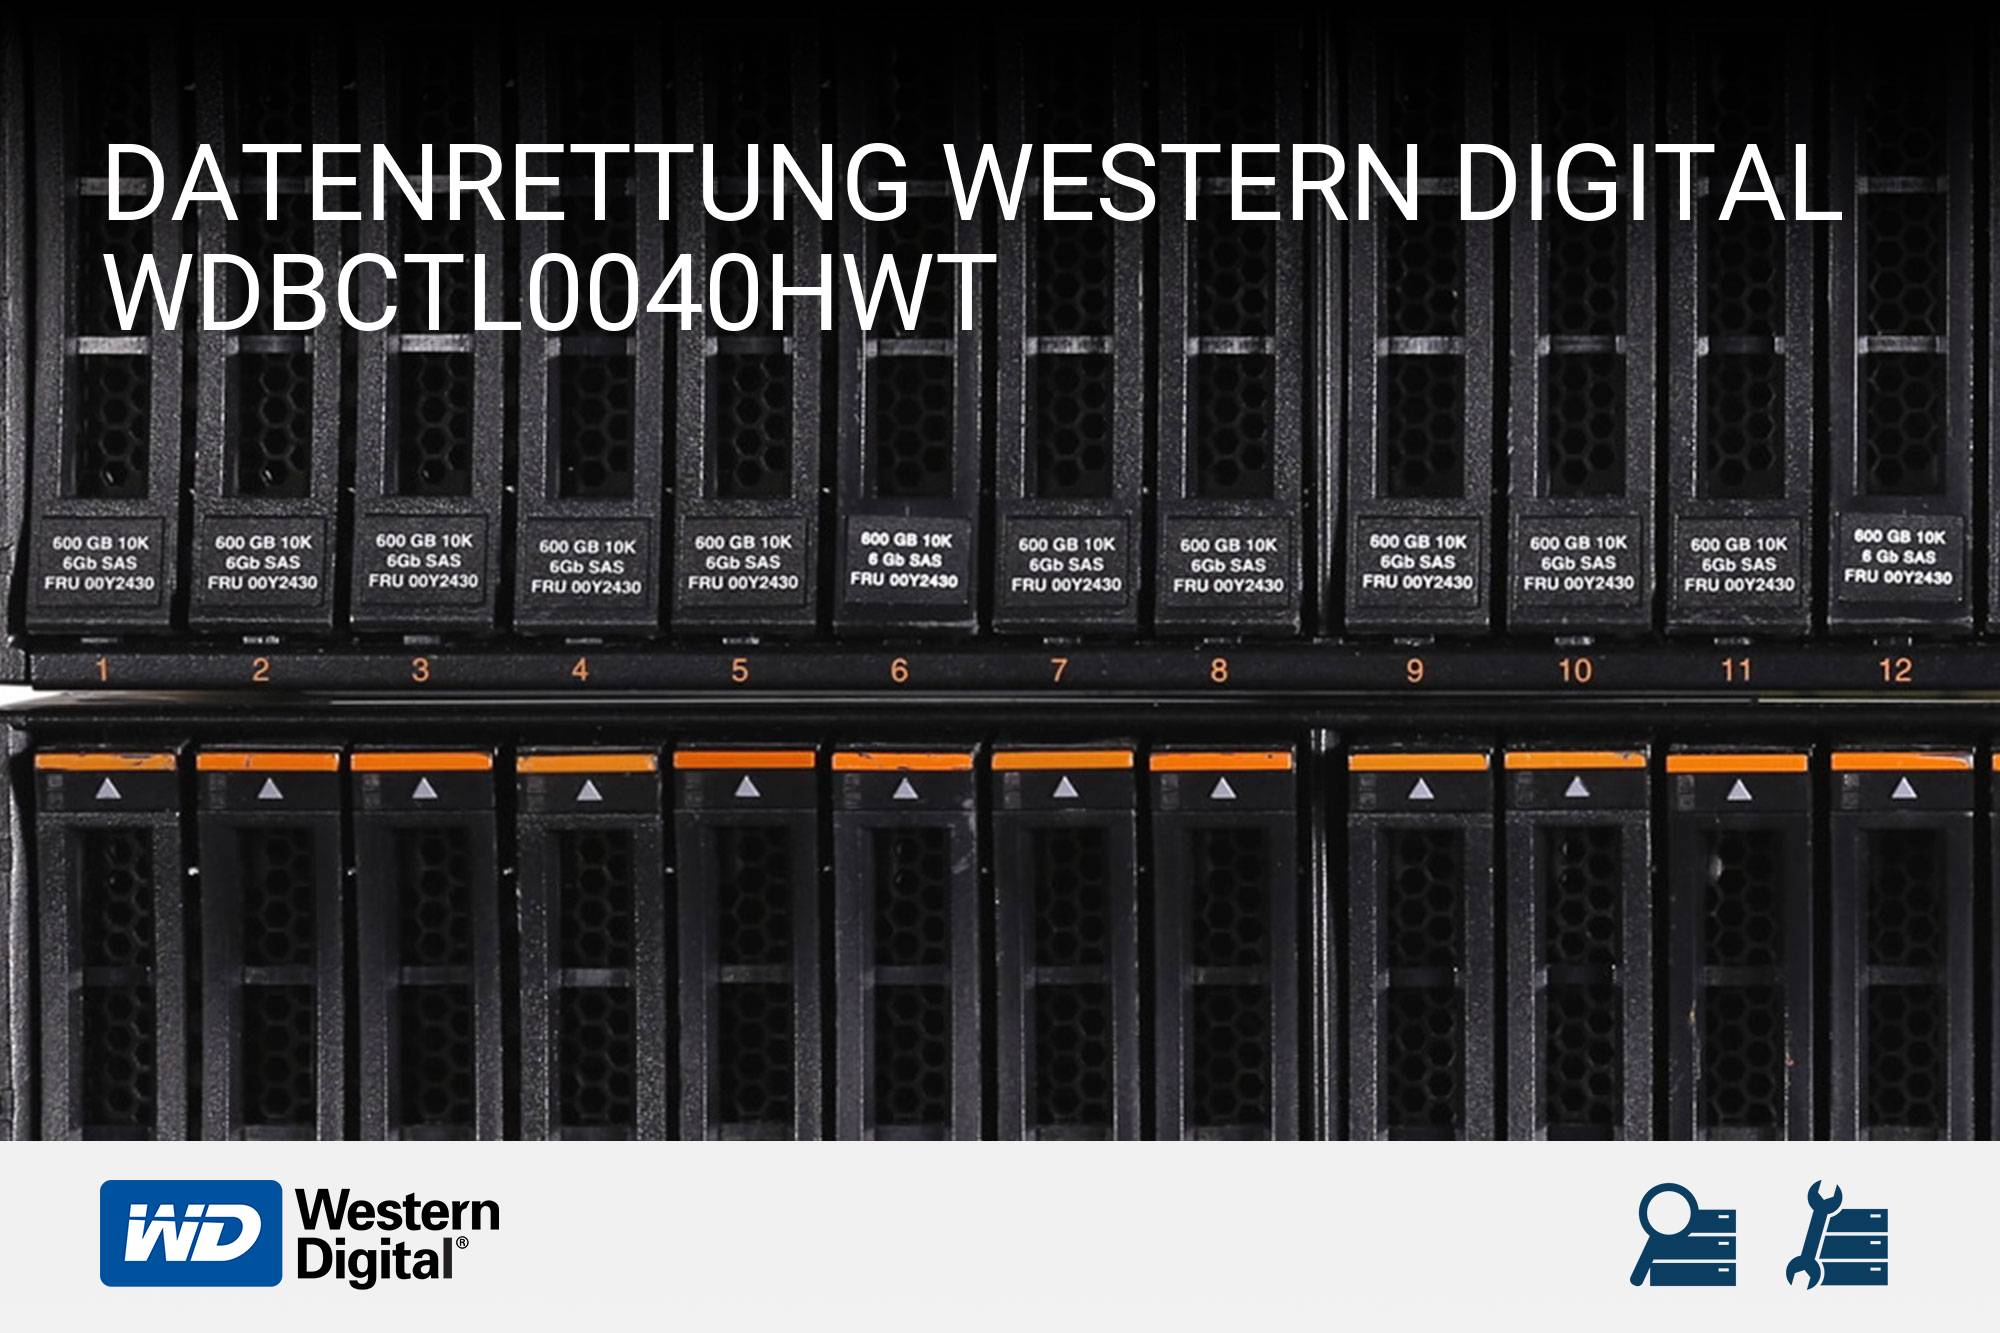 Western Digital WDBCTL0040HWT